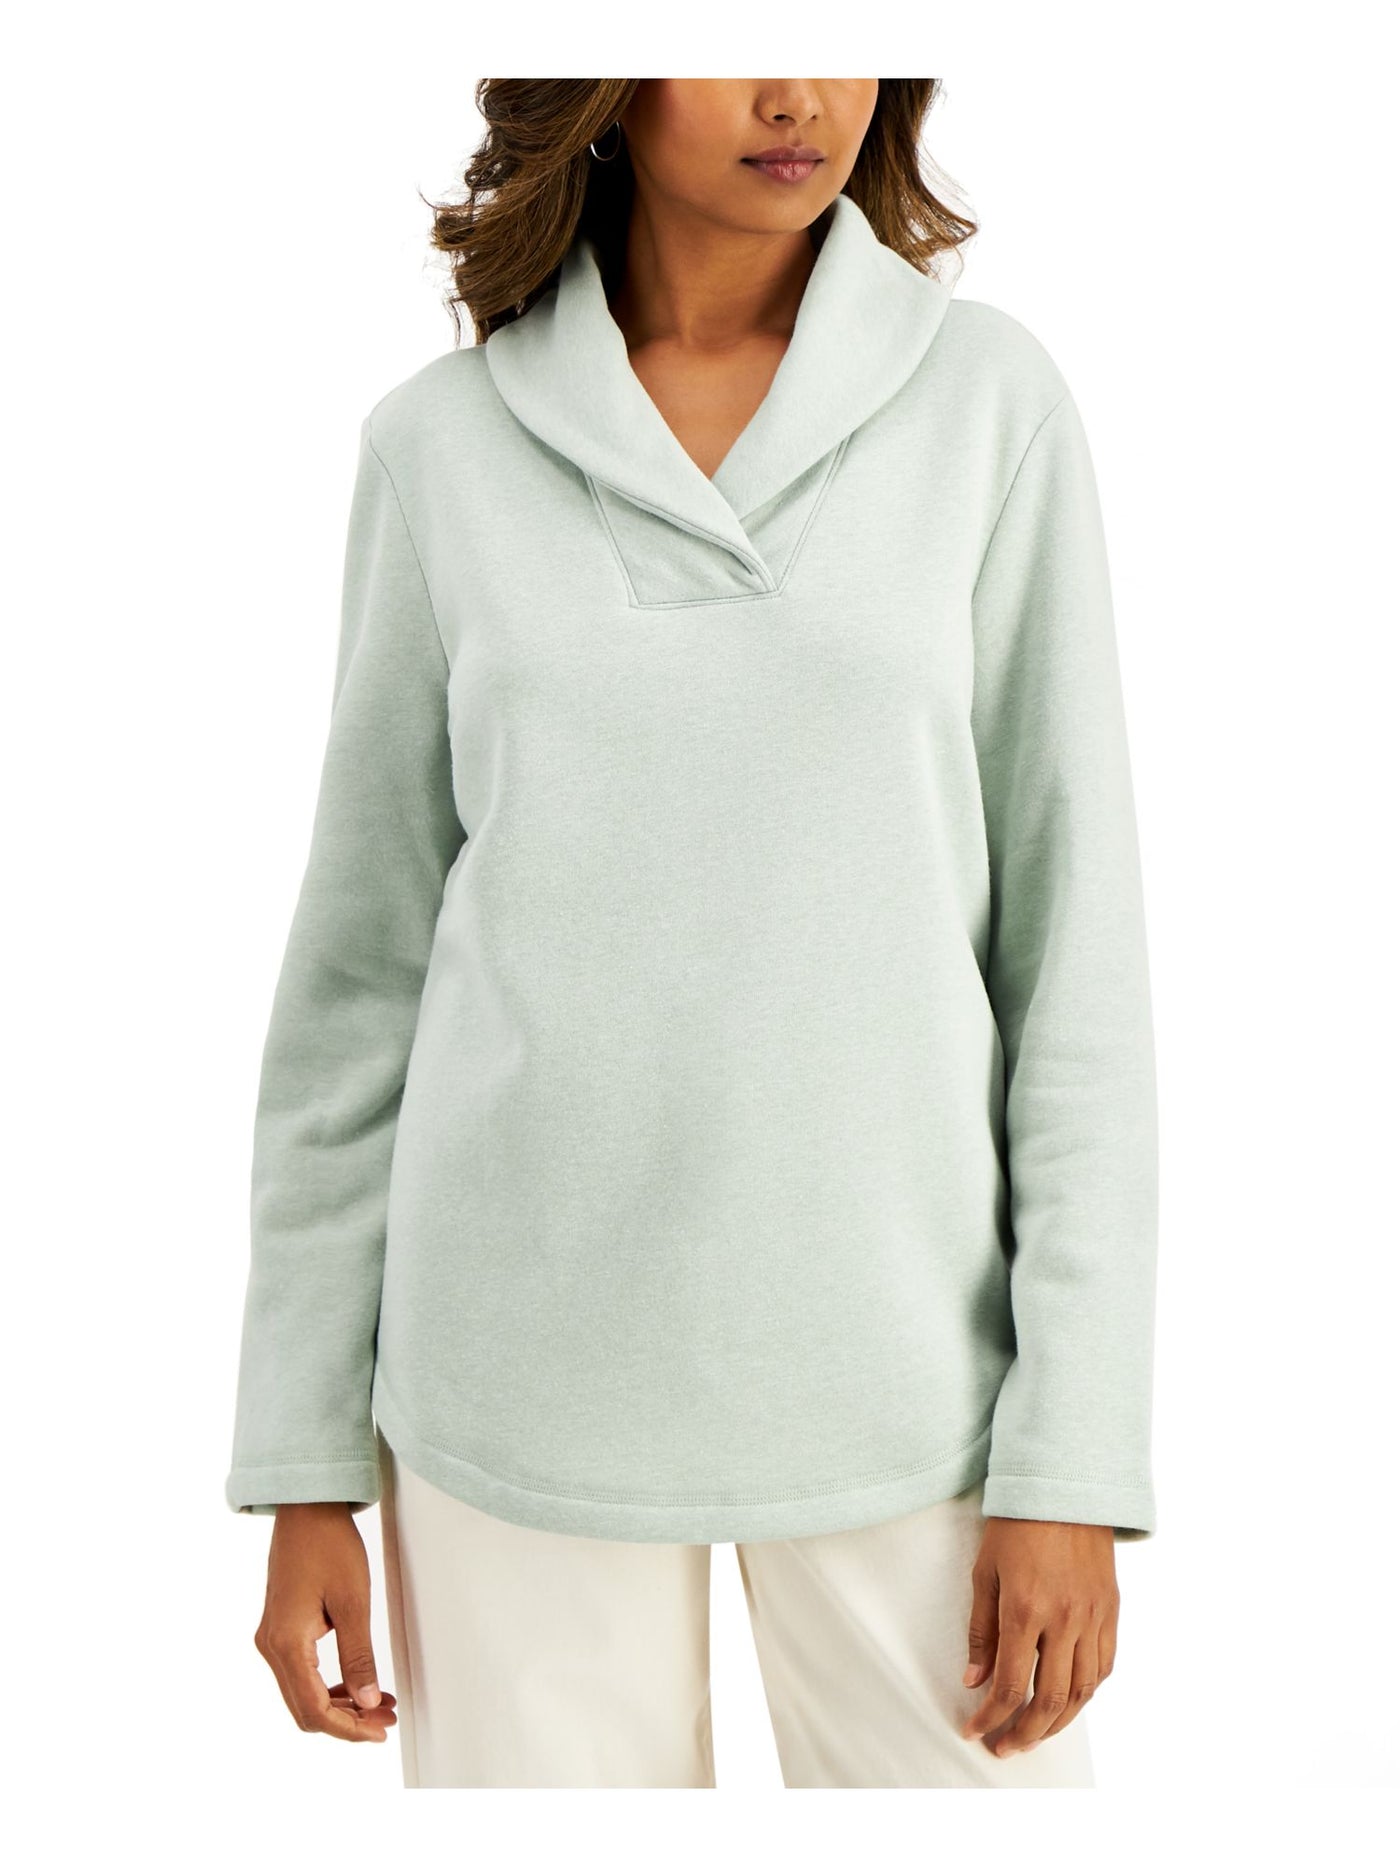 KAREN SCOTT SPORT Womens Green Fleece Long Sleeve Sweater XXL